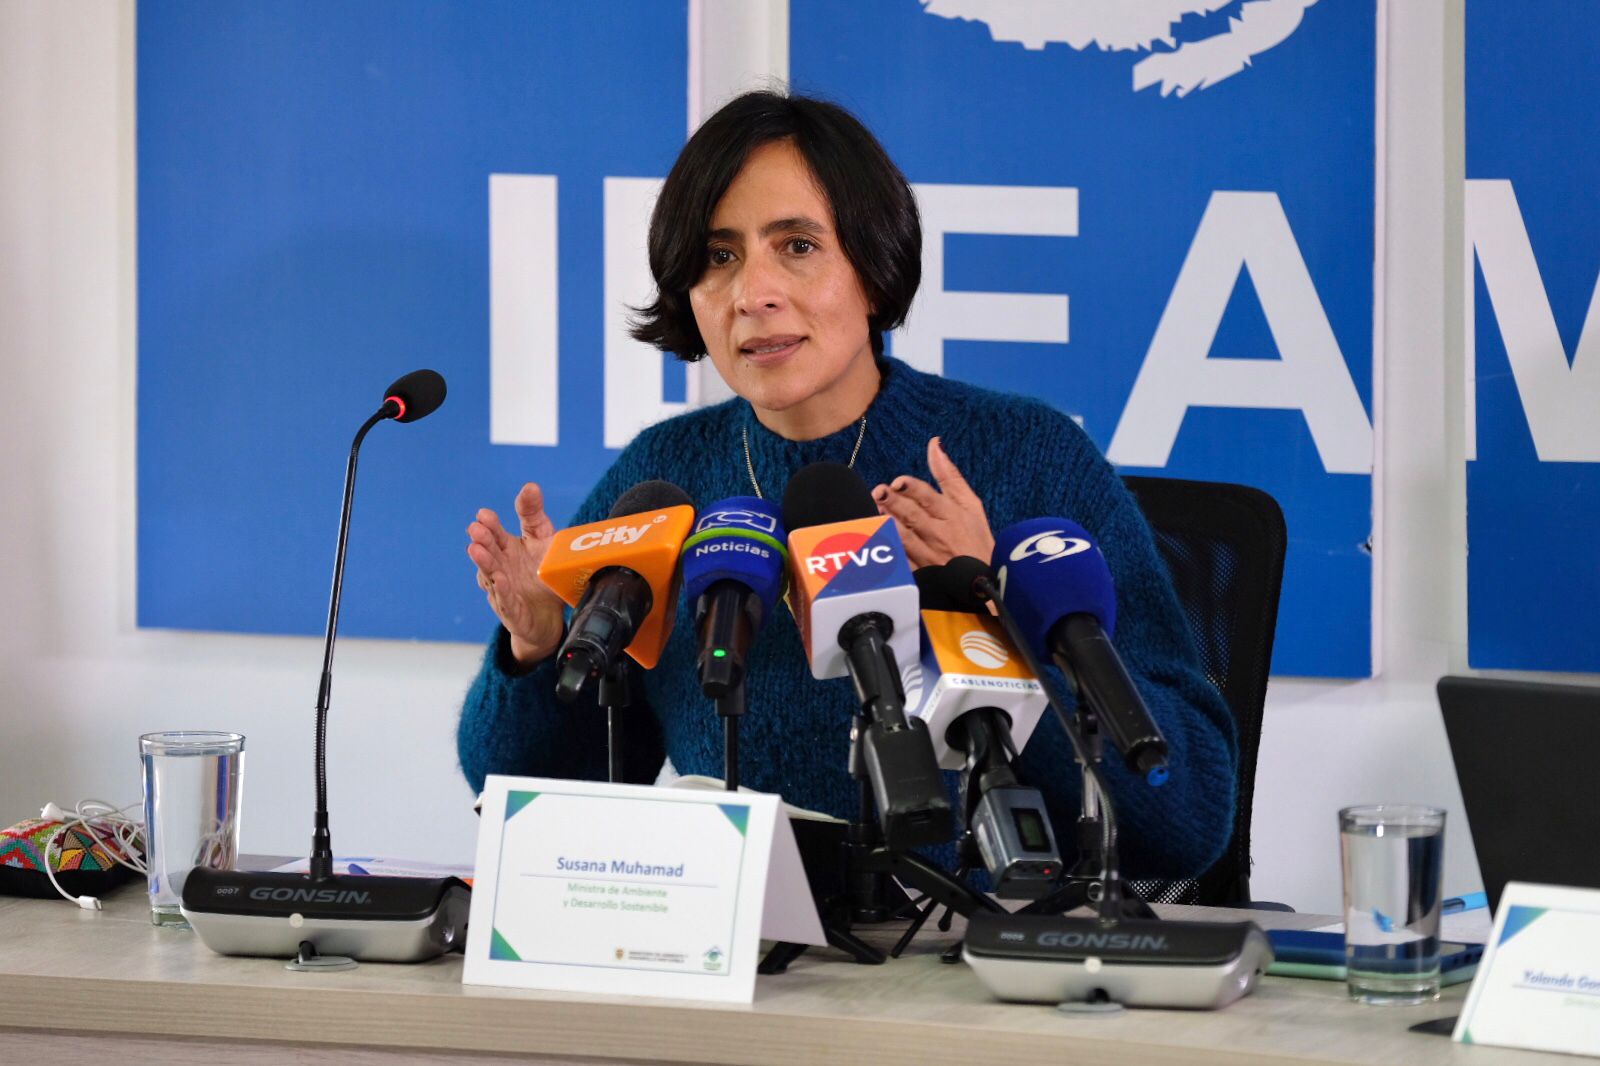 En la imagen, la ministra de Ambiente, Susana Muhamad. Foto: Ministerio de Ambiente